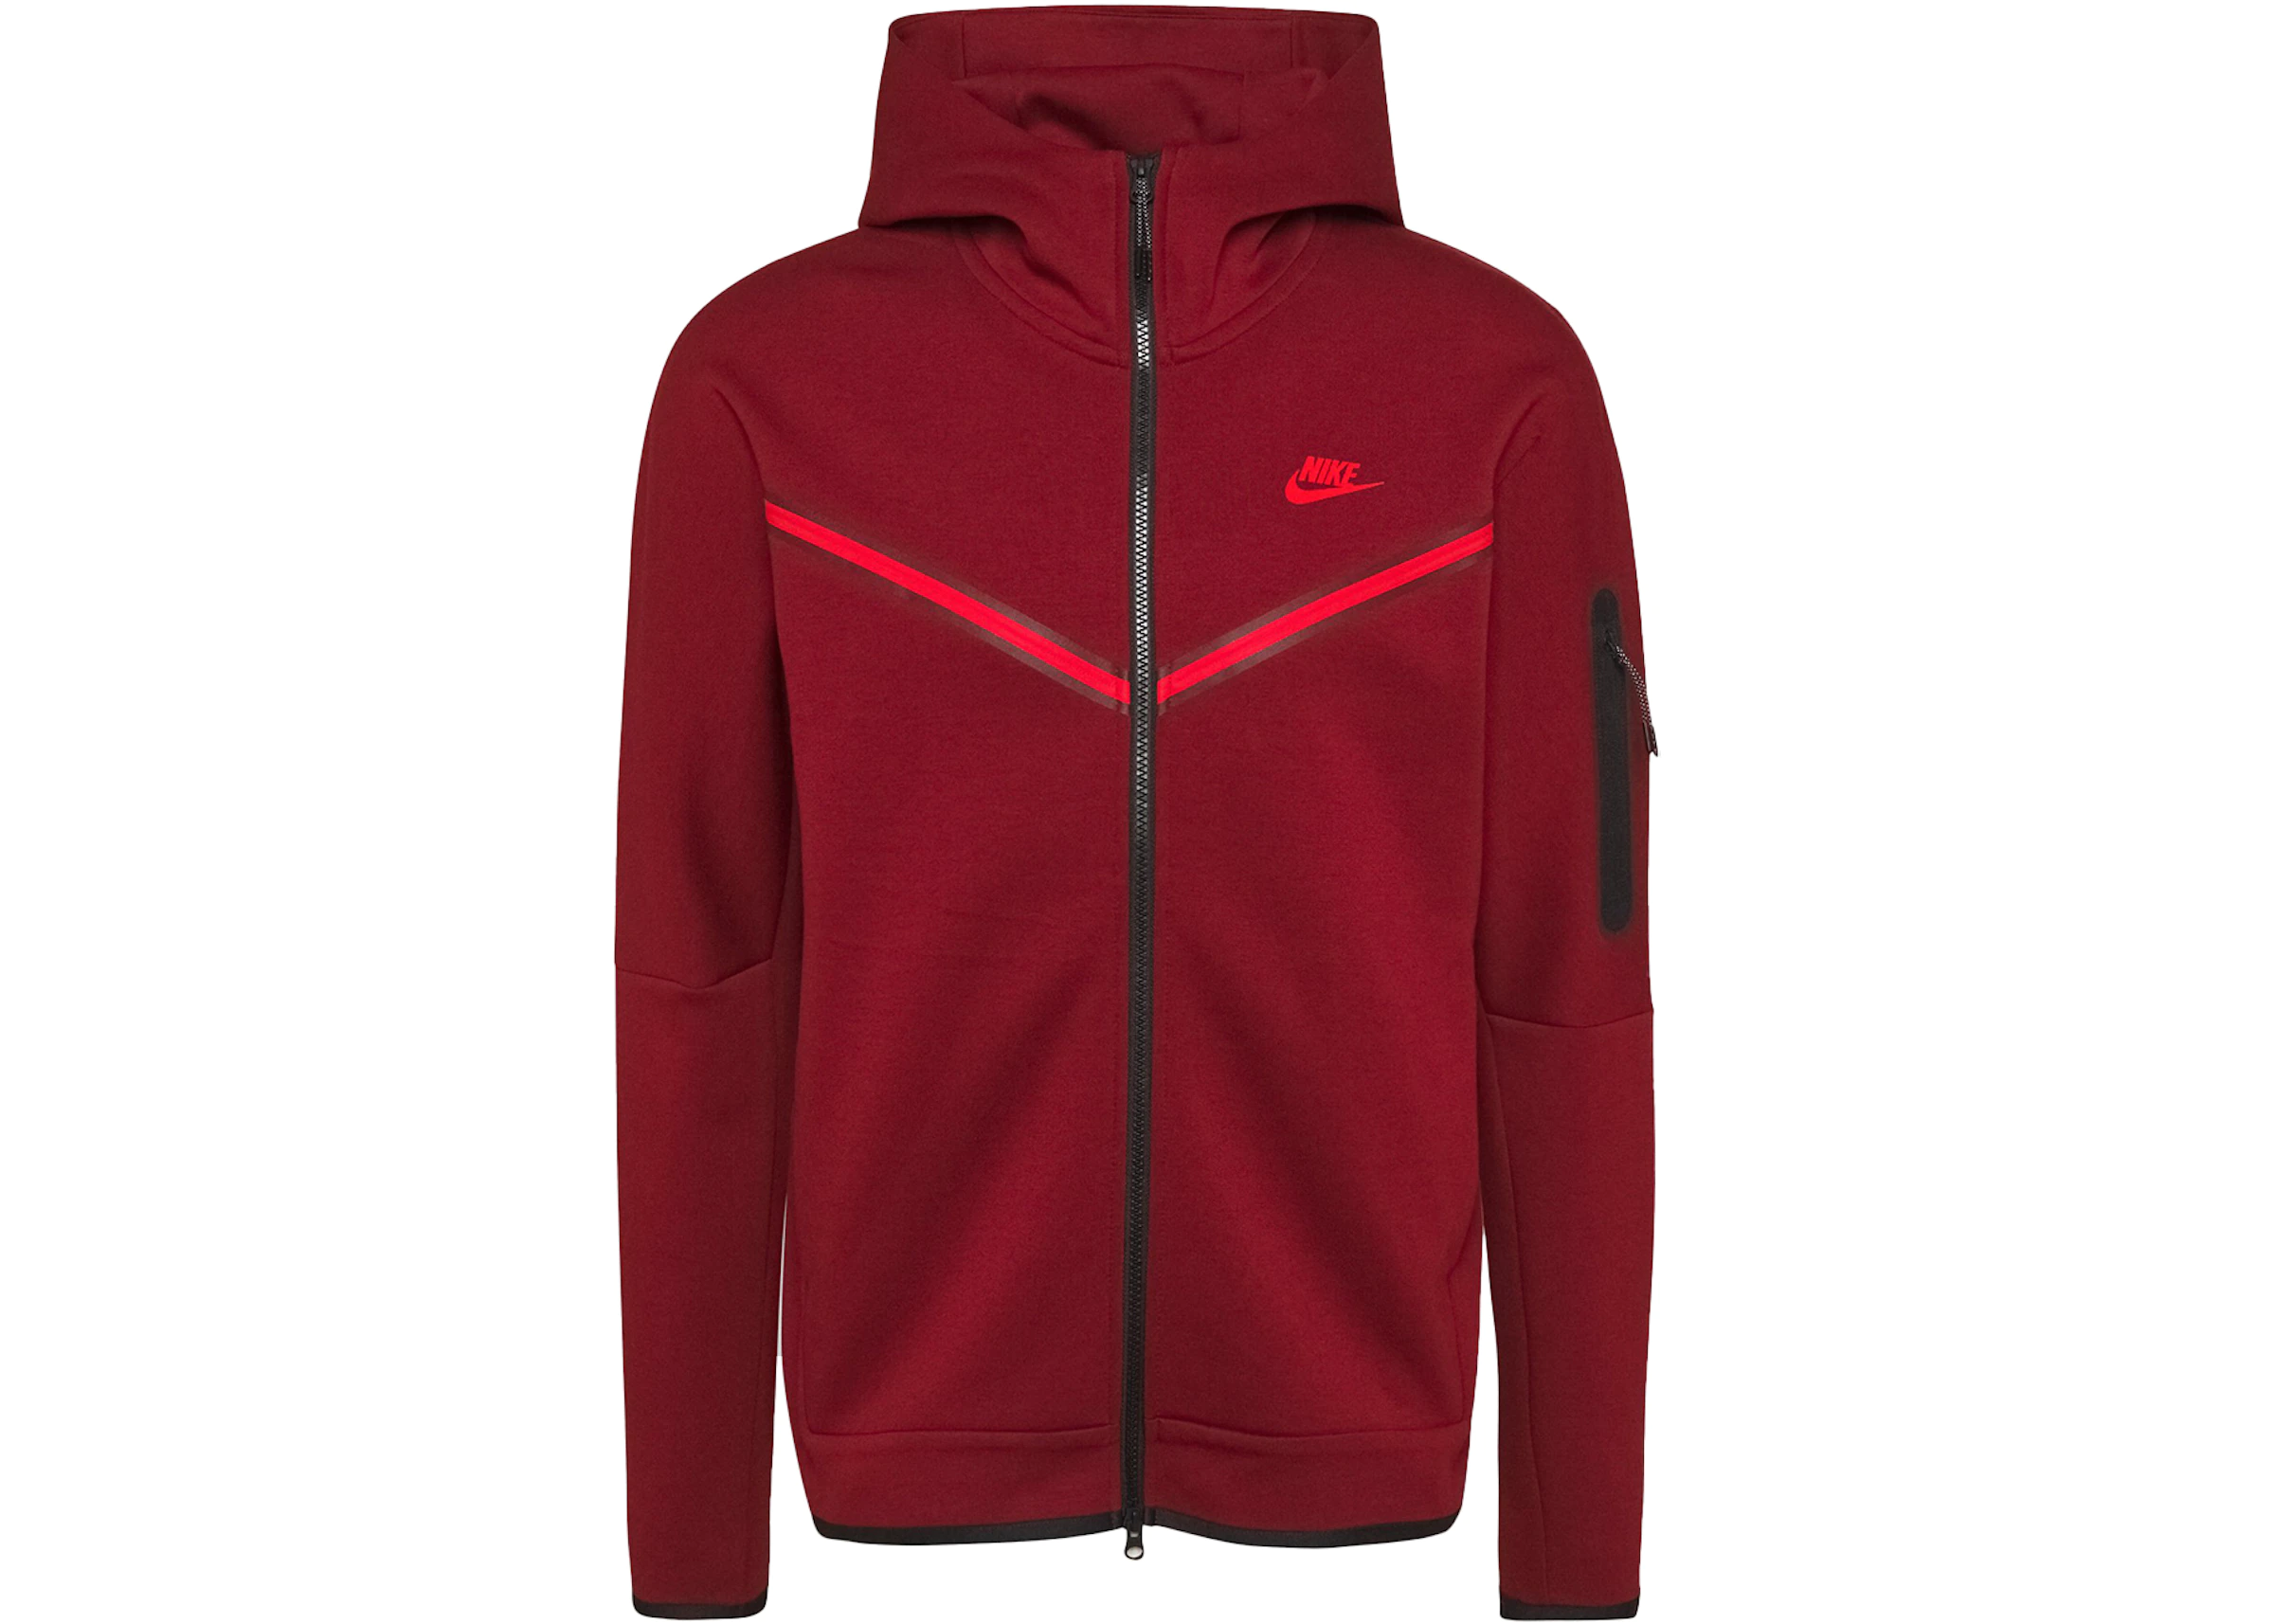 Interpunctie begin Onderdompeling Nike Tech Fleece Full-Zip Hoodie Team Red/Black - US